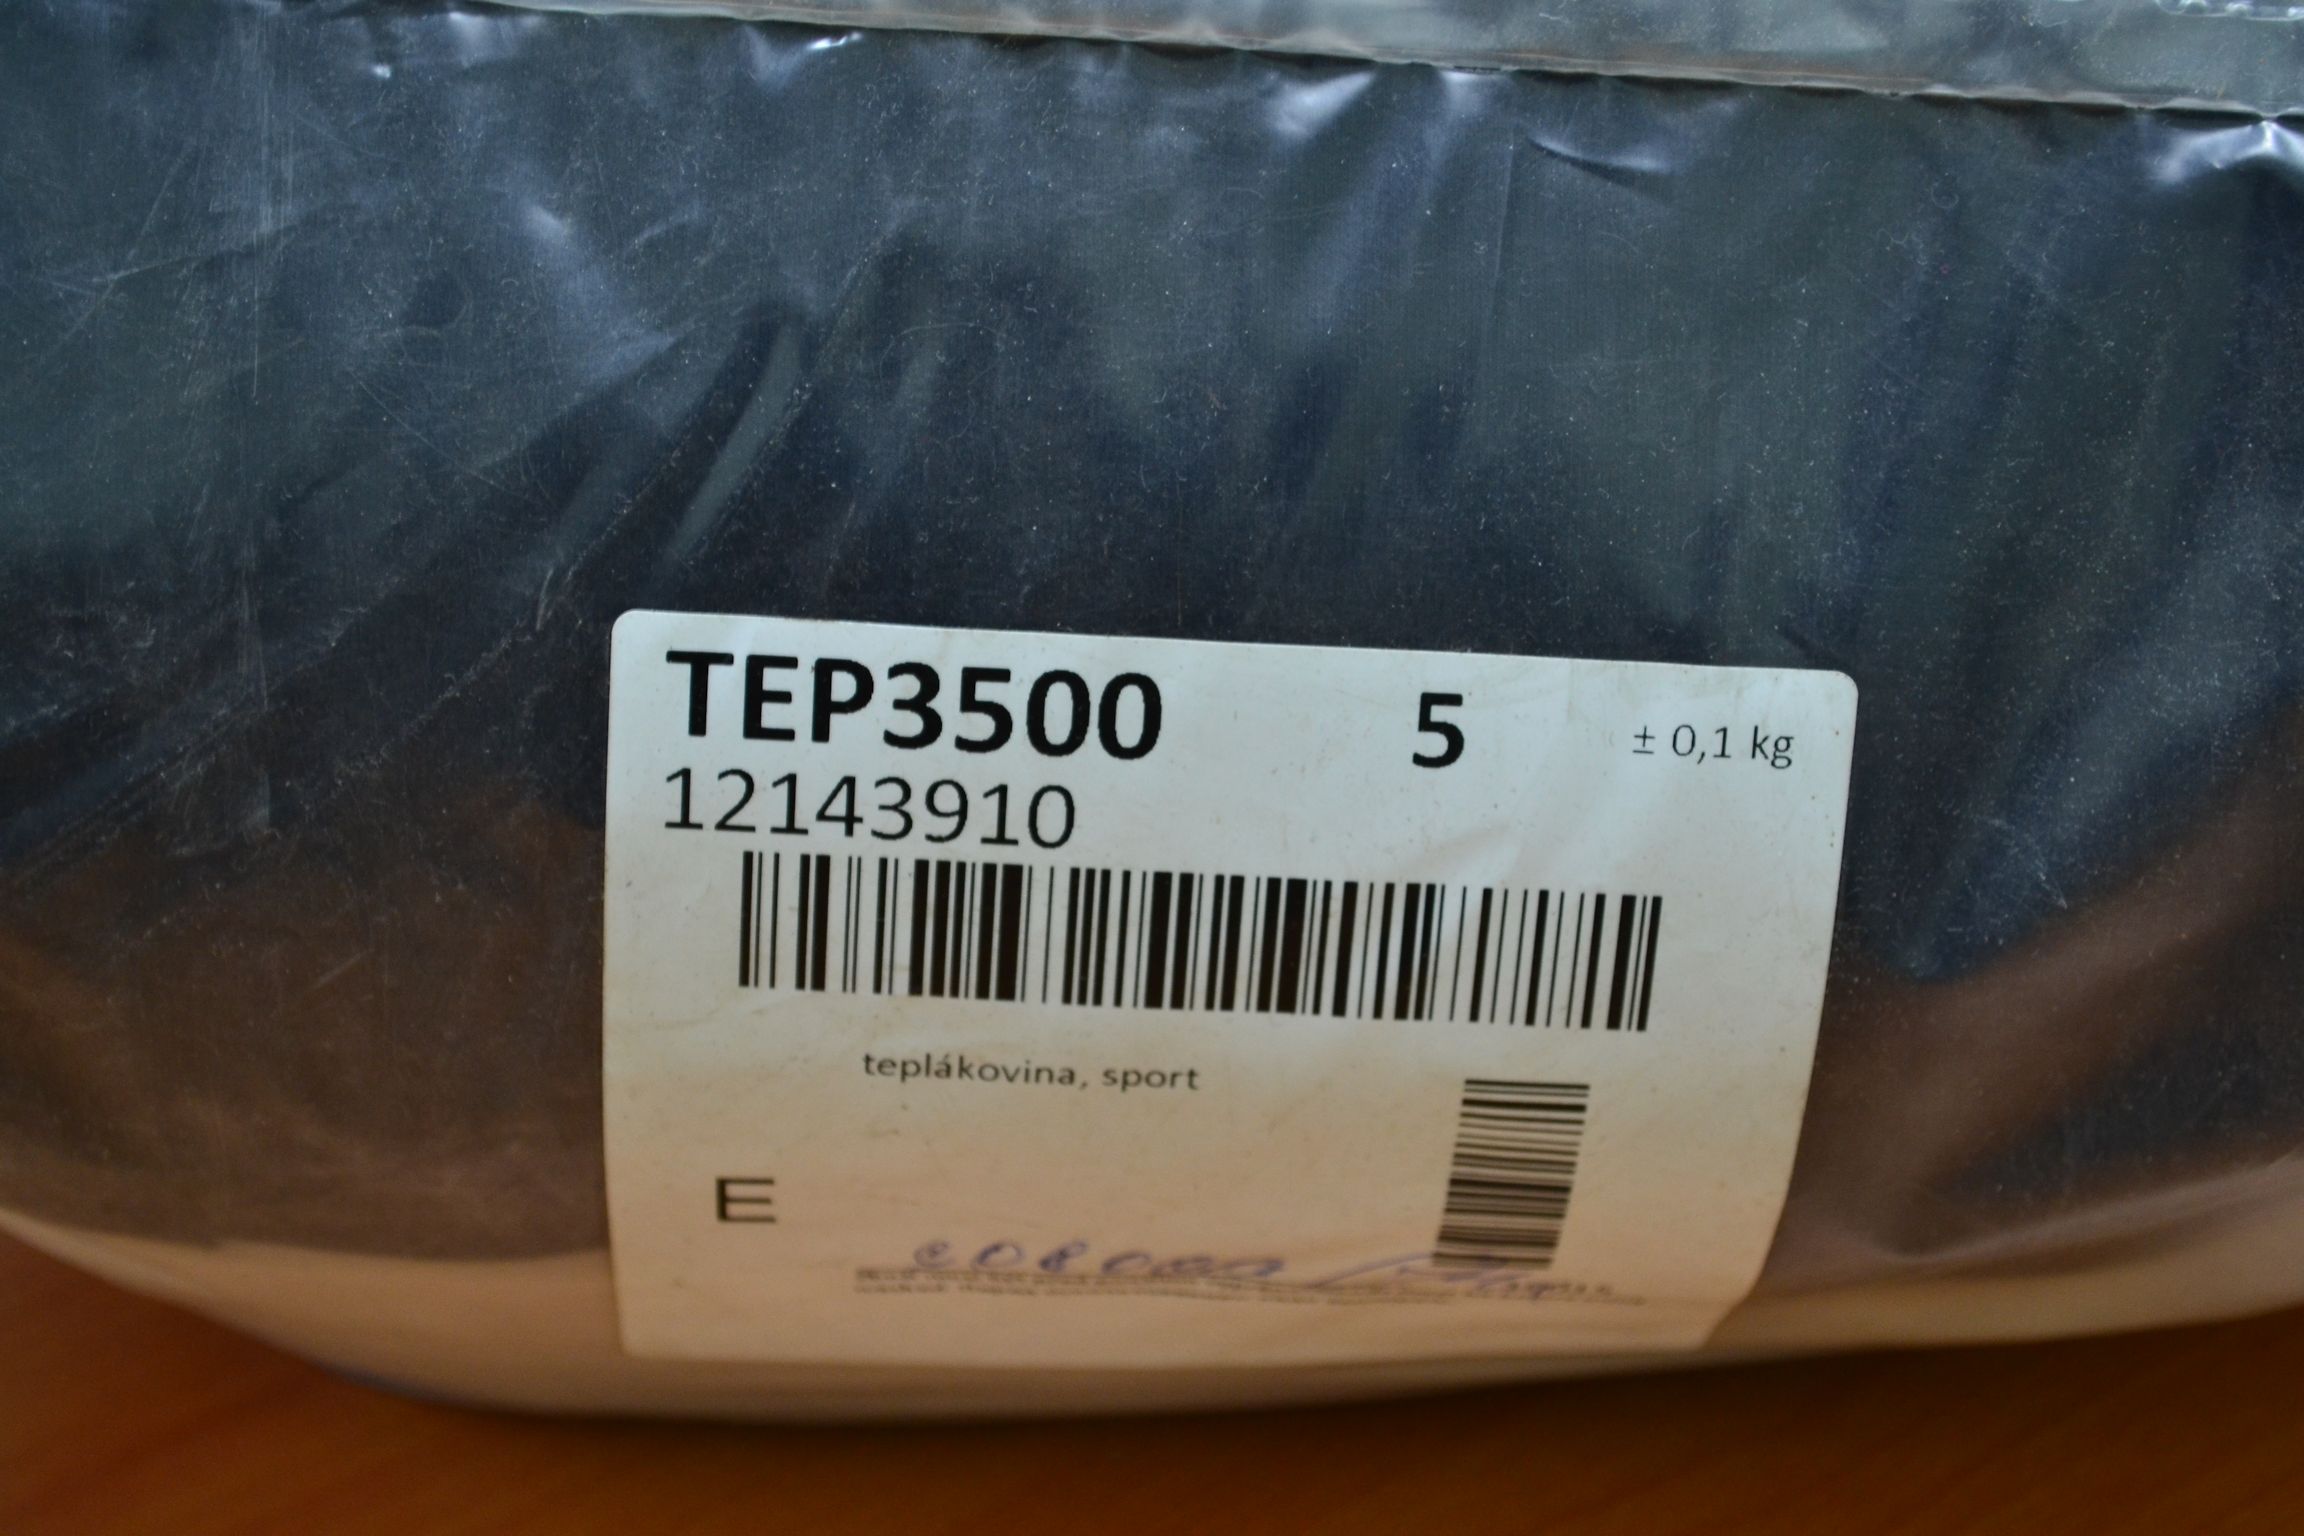 TEP3500 Спортивная смесь; код мешка 12143910